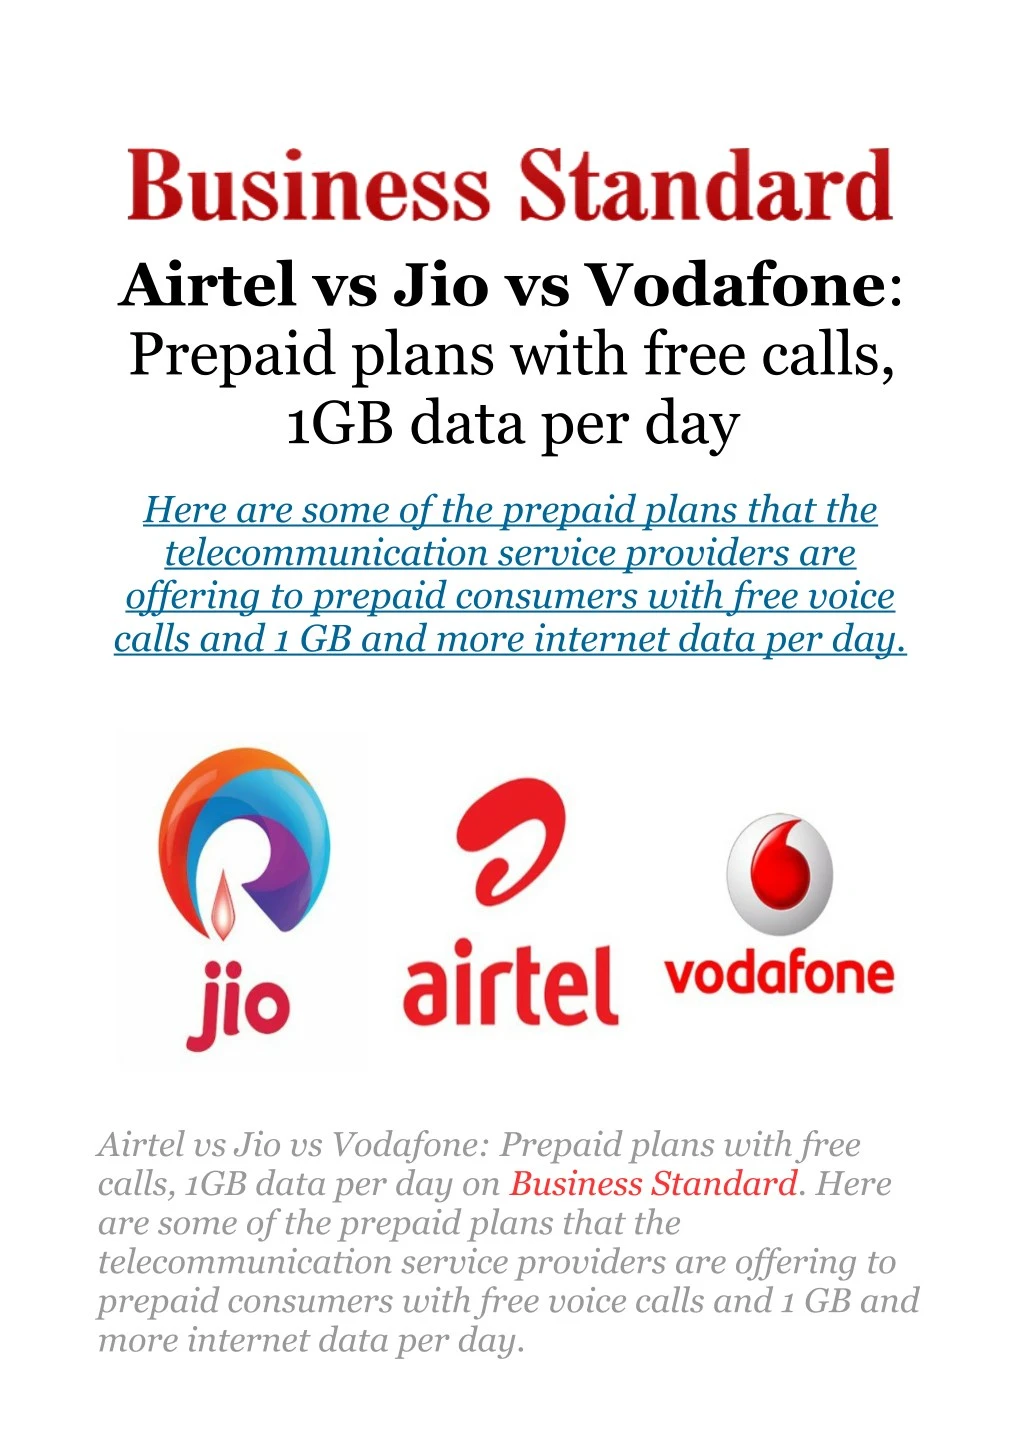 airtel vs jio vs vodafone prepaid plans with free